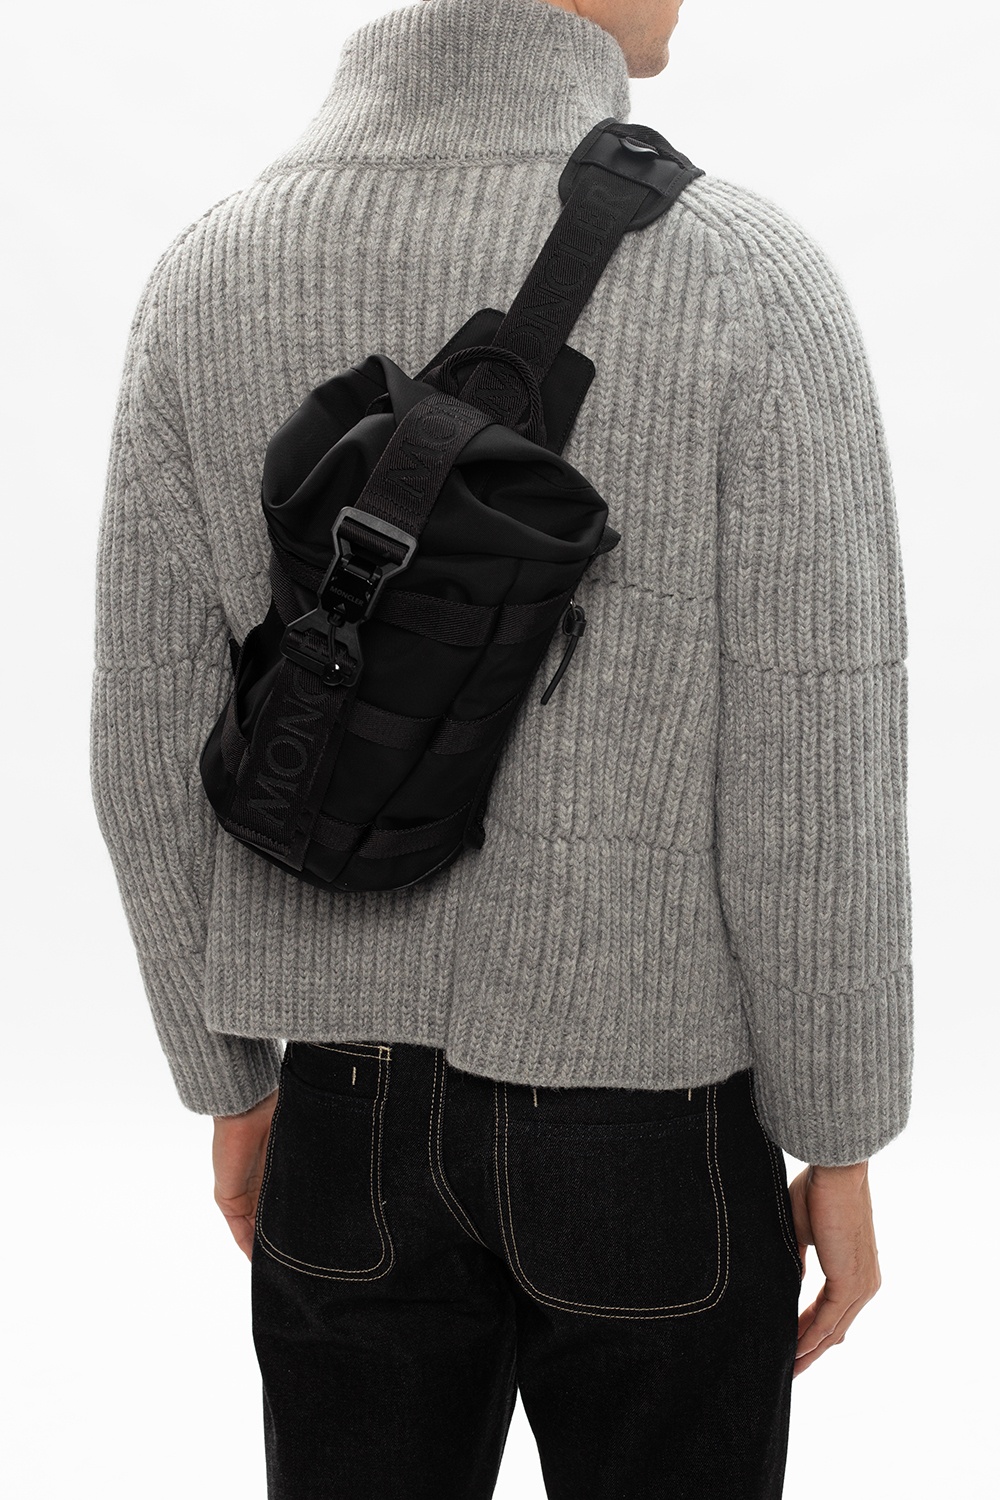 Moncler 'Argens' single-shoulder backpack | Men's Bags | Vitkac